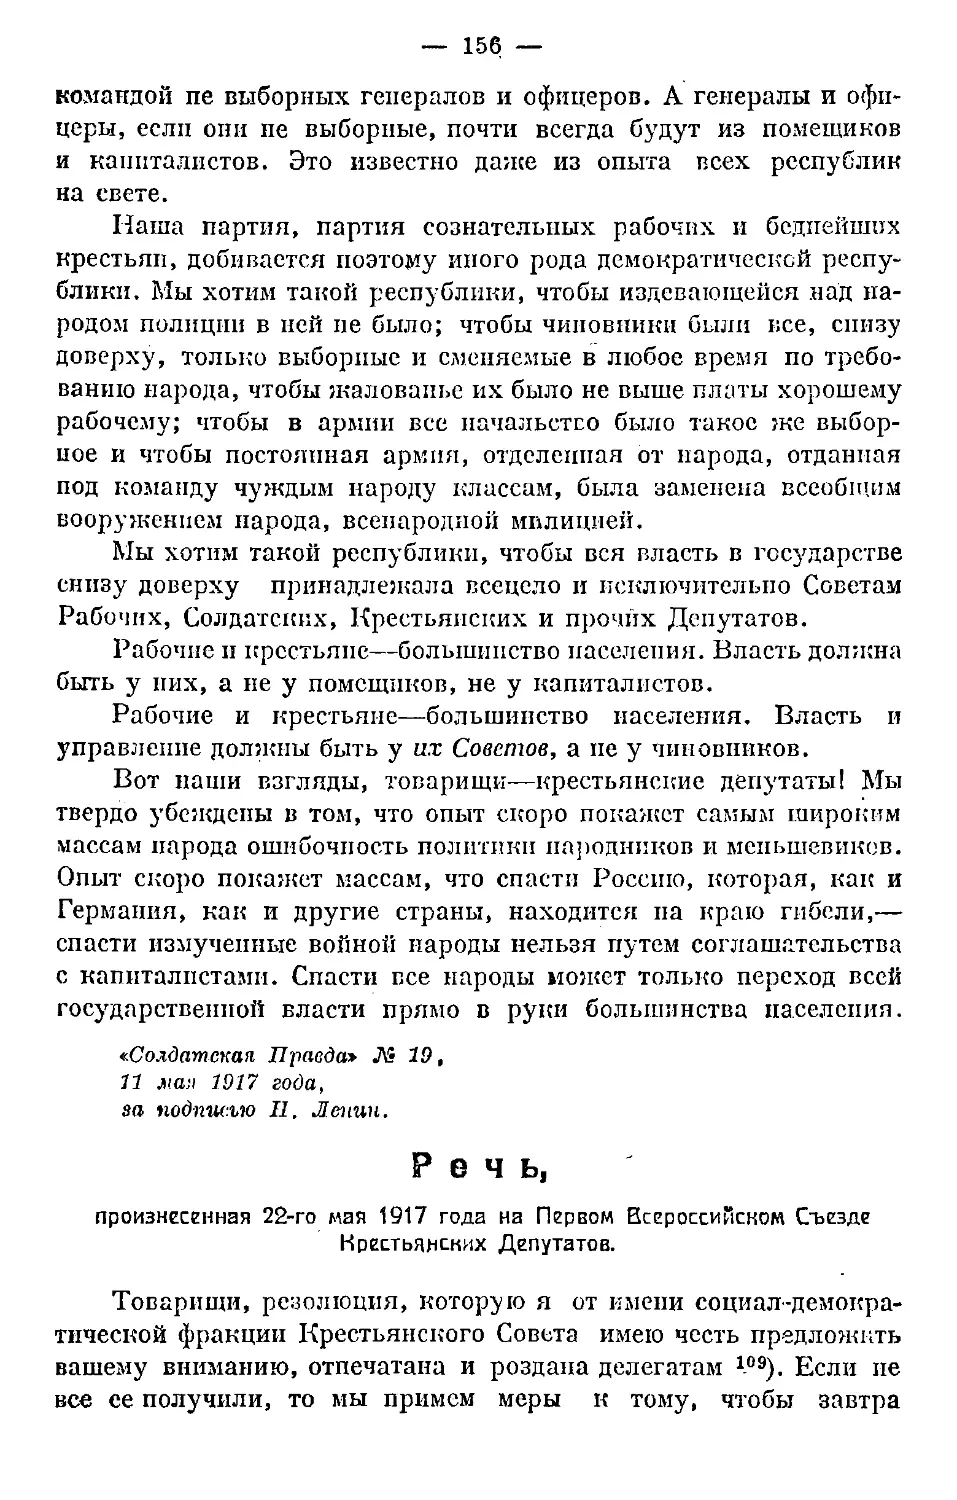 Речь, произнесенная 22 мая 1917 г. на первом Всероссийском Съезде Крестьянских Депутатов